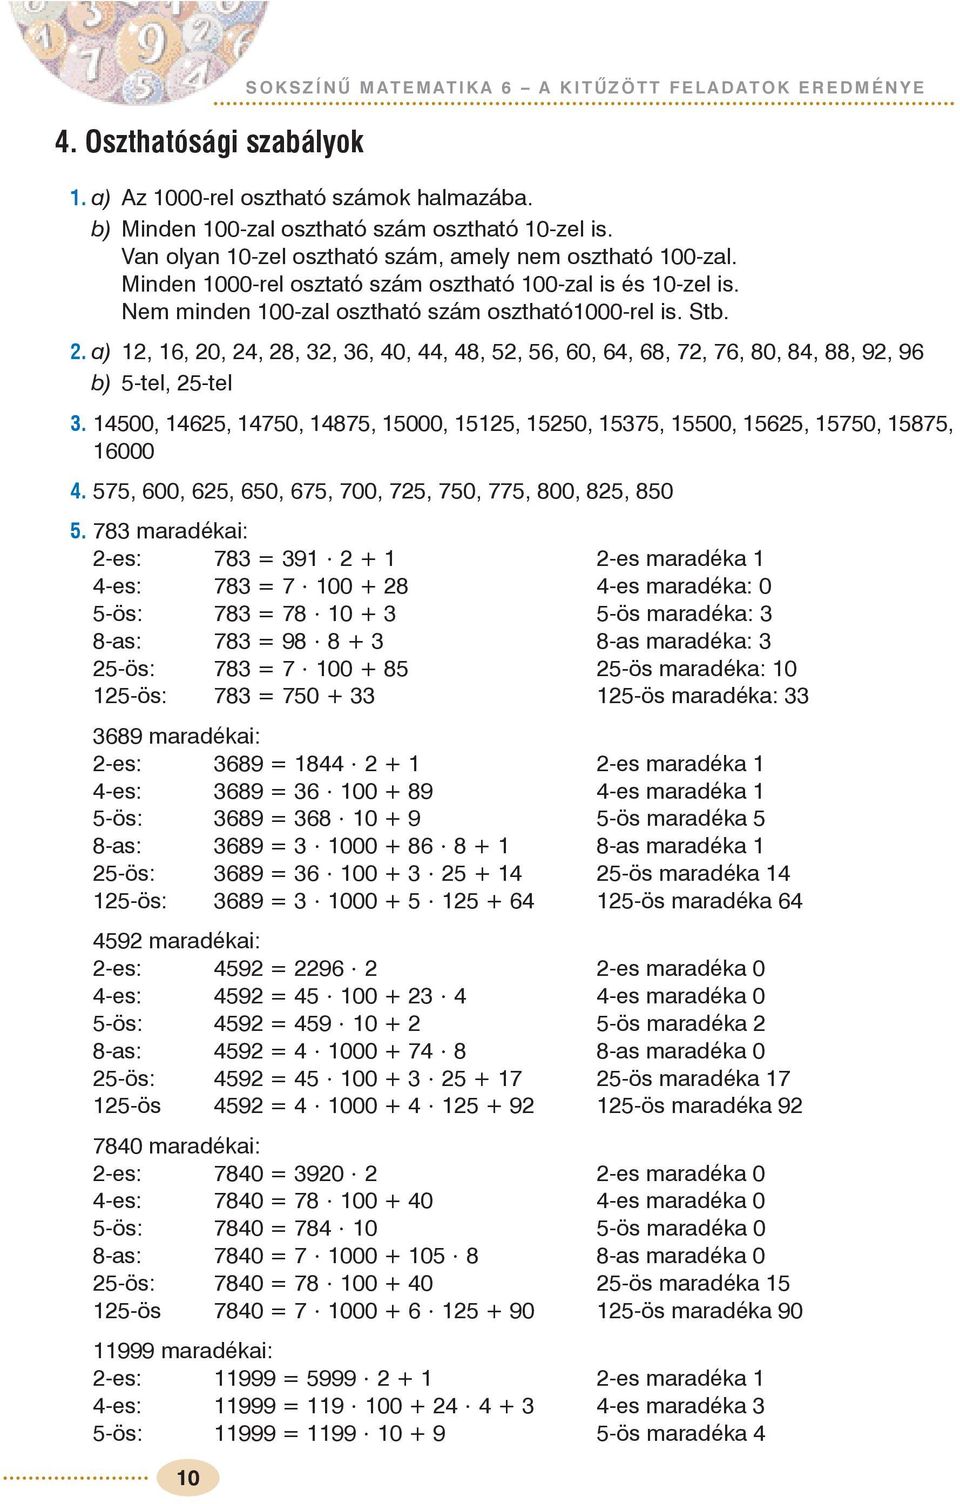 Sokszínû matematika 6. A KITÛZÖTT FELADATOK EREDMÉNYE - PDF Free Download